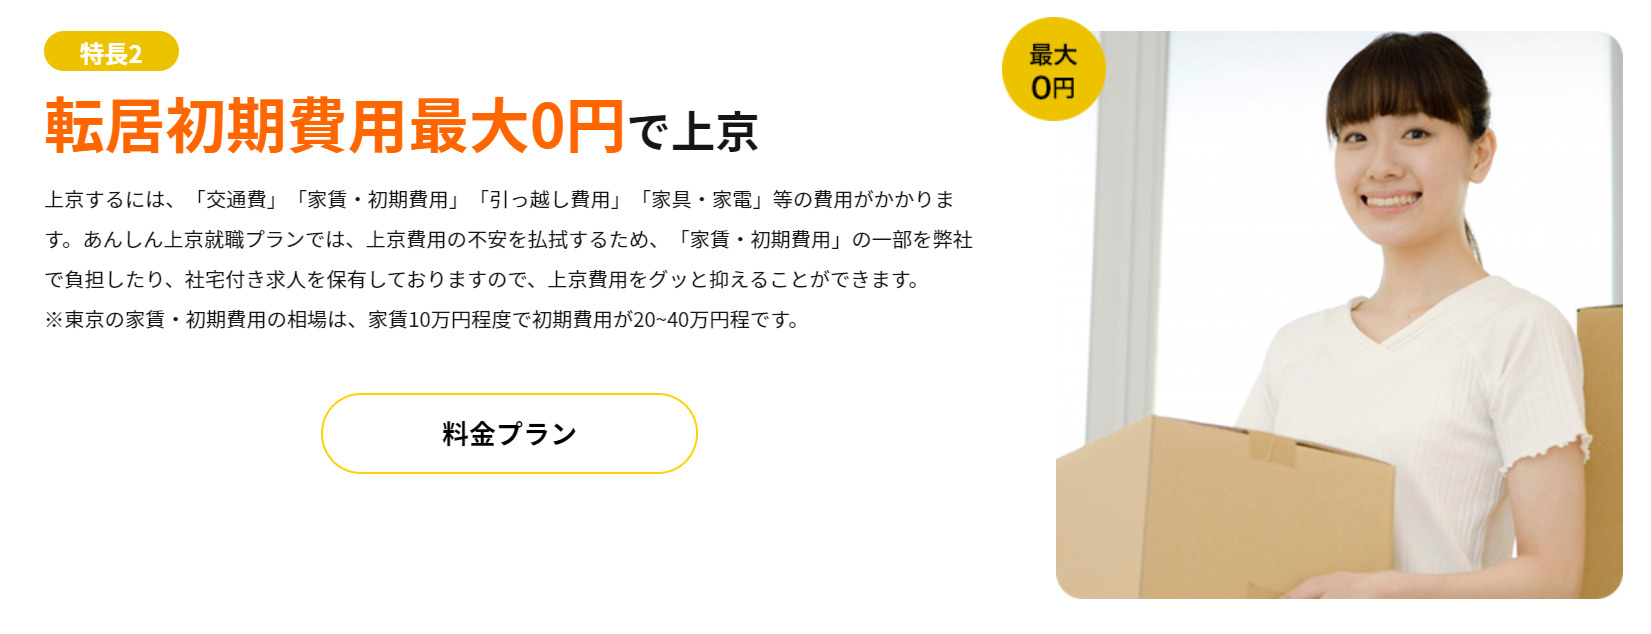 miyako-ticket-Initial-cost.jpg